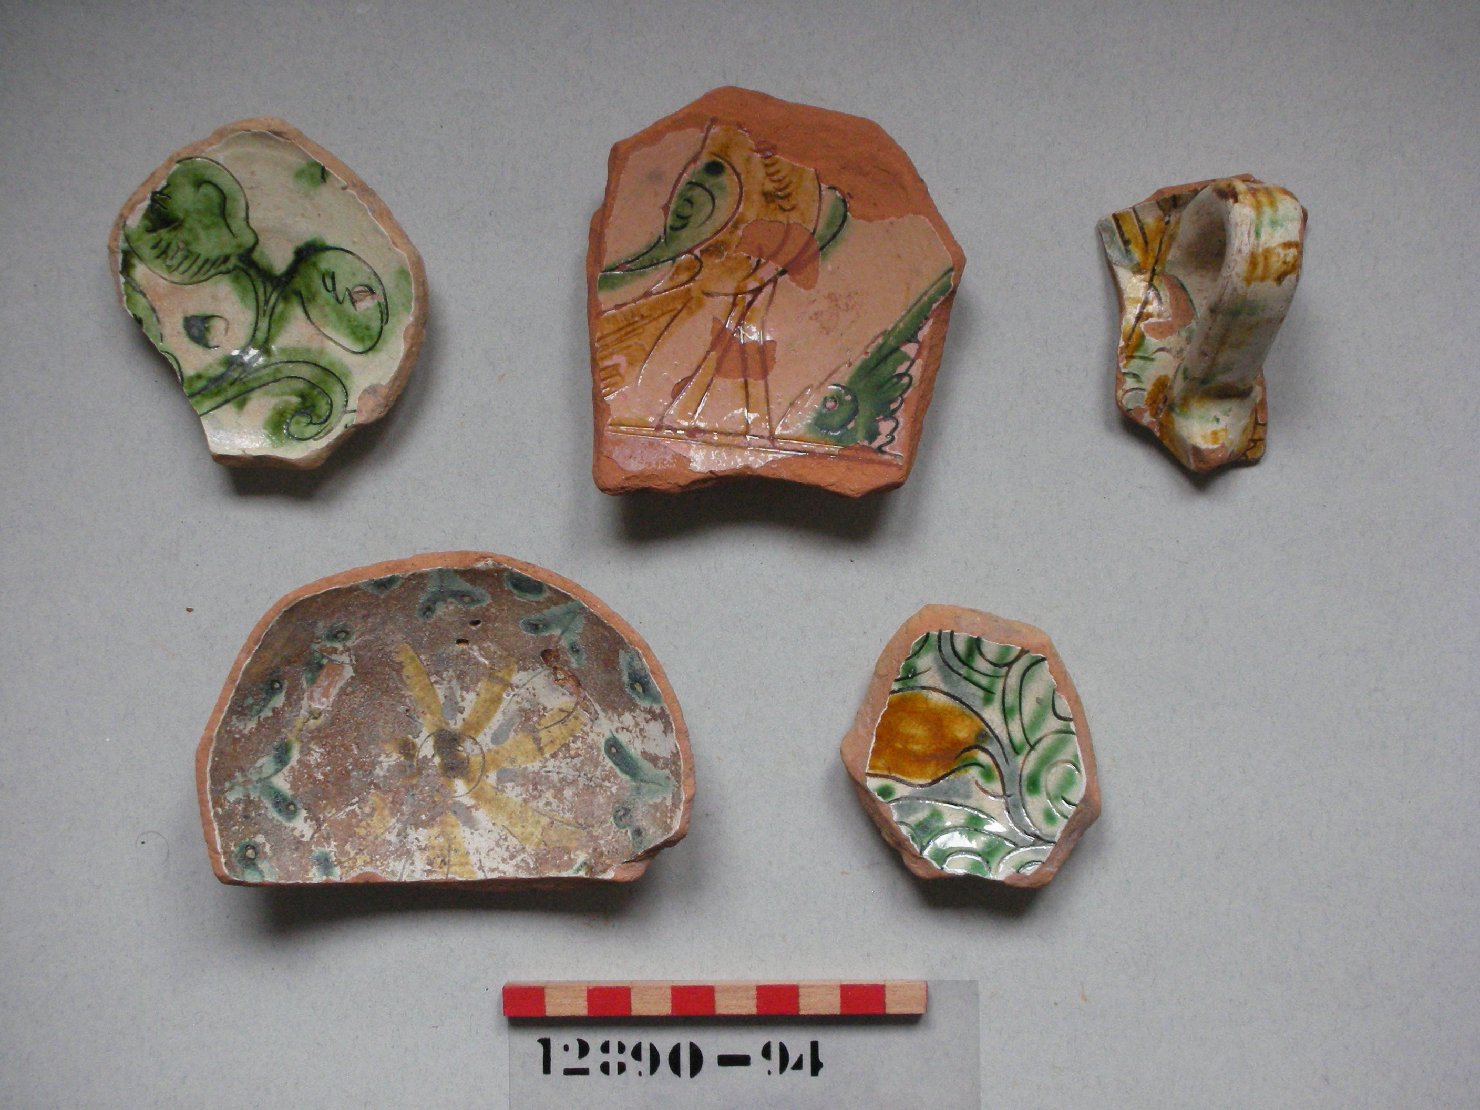 motivi decorativi vegetali (scodella, frammento) - ambito veneziano (secc. XVI/ XVII)